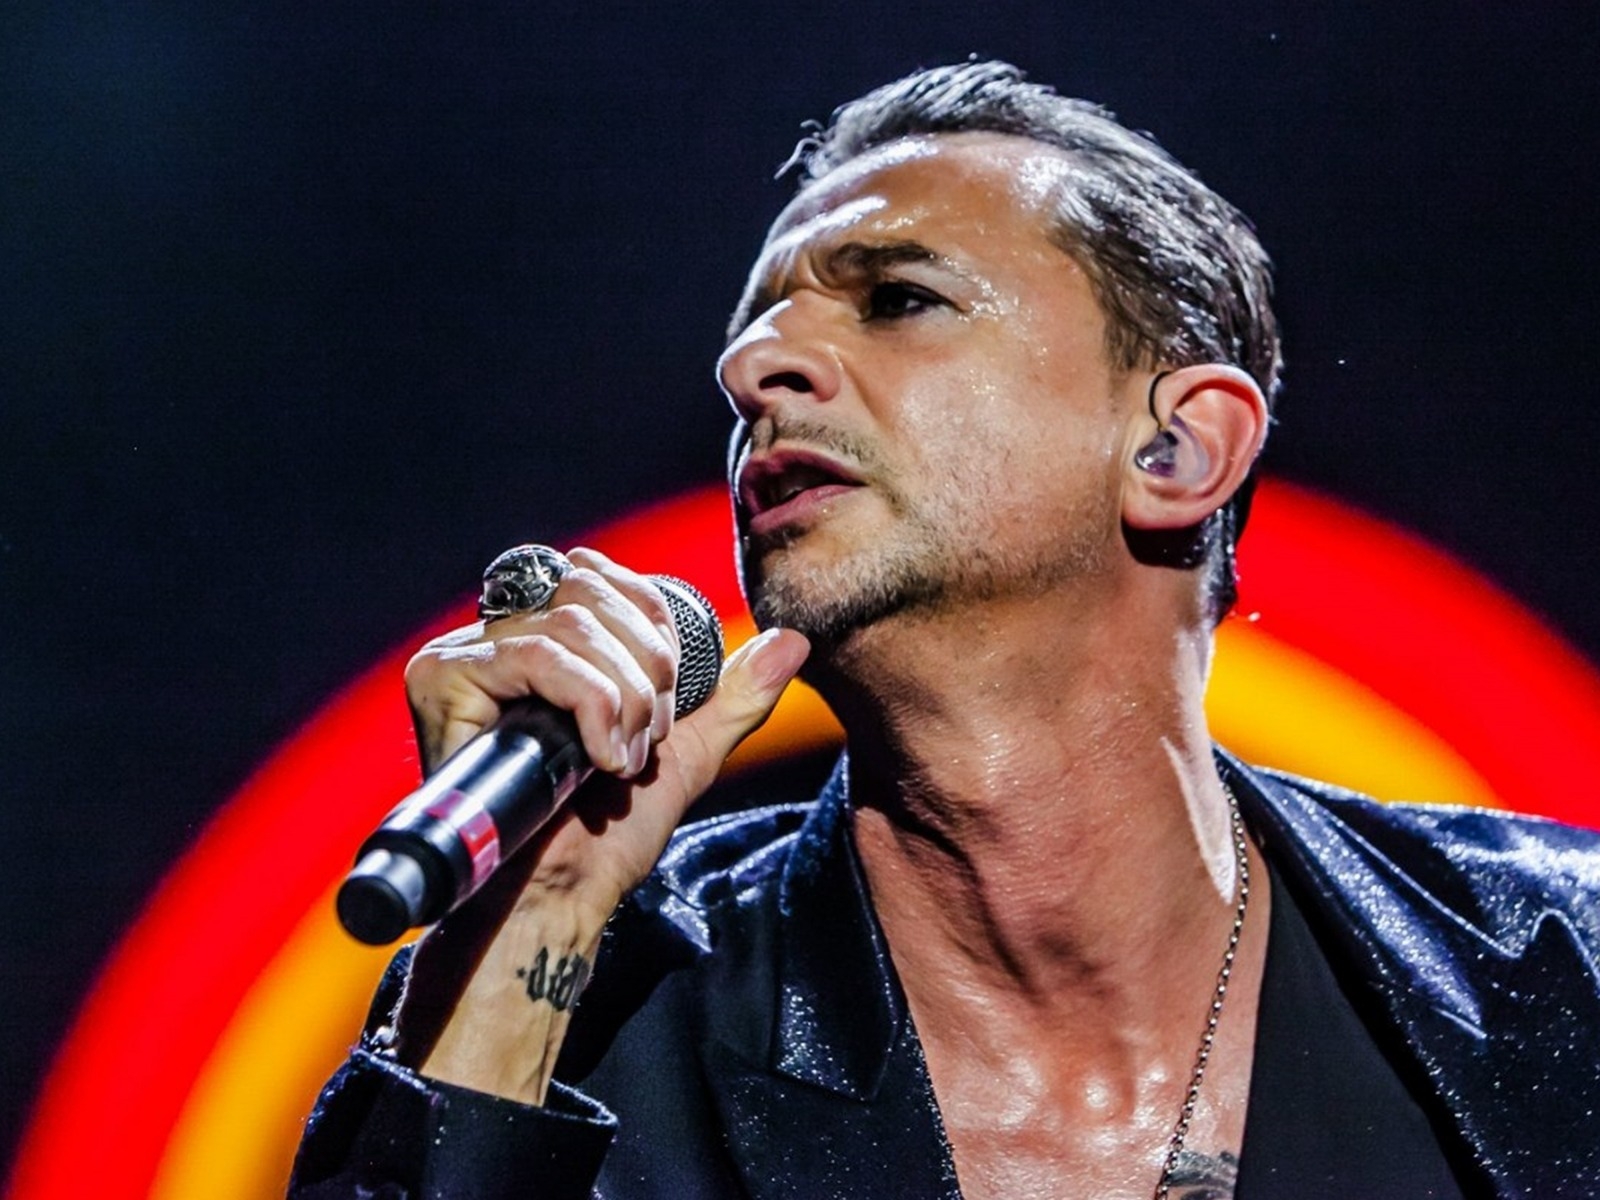 David Gahan Depeche Mode for 1600 x 1200 resolution